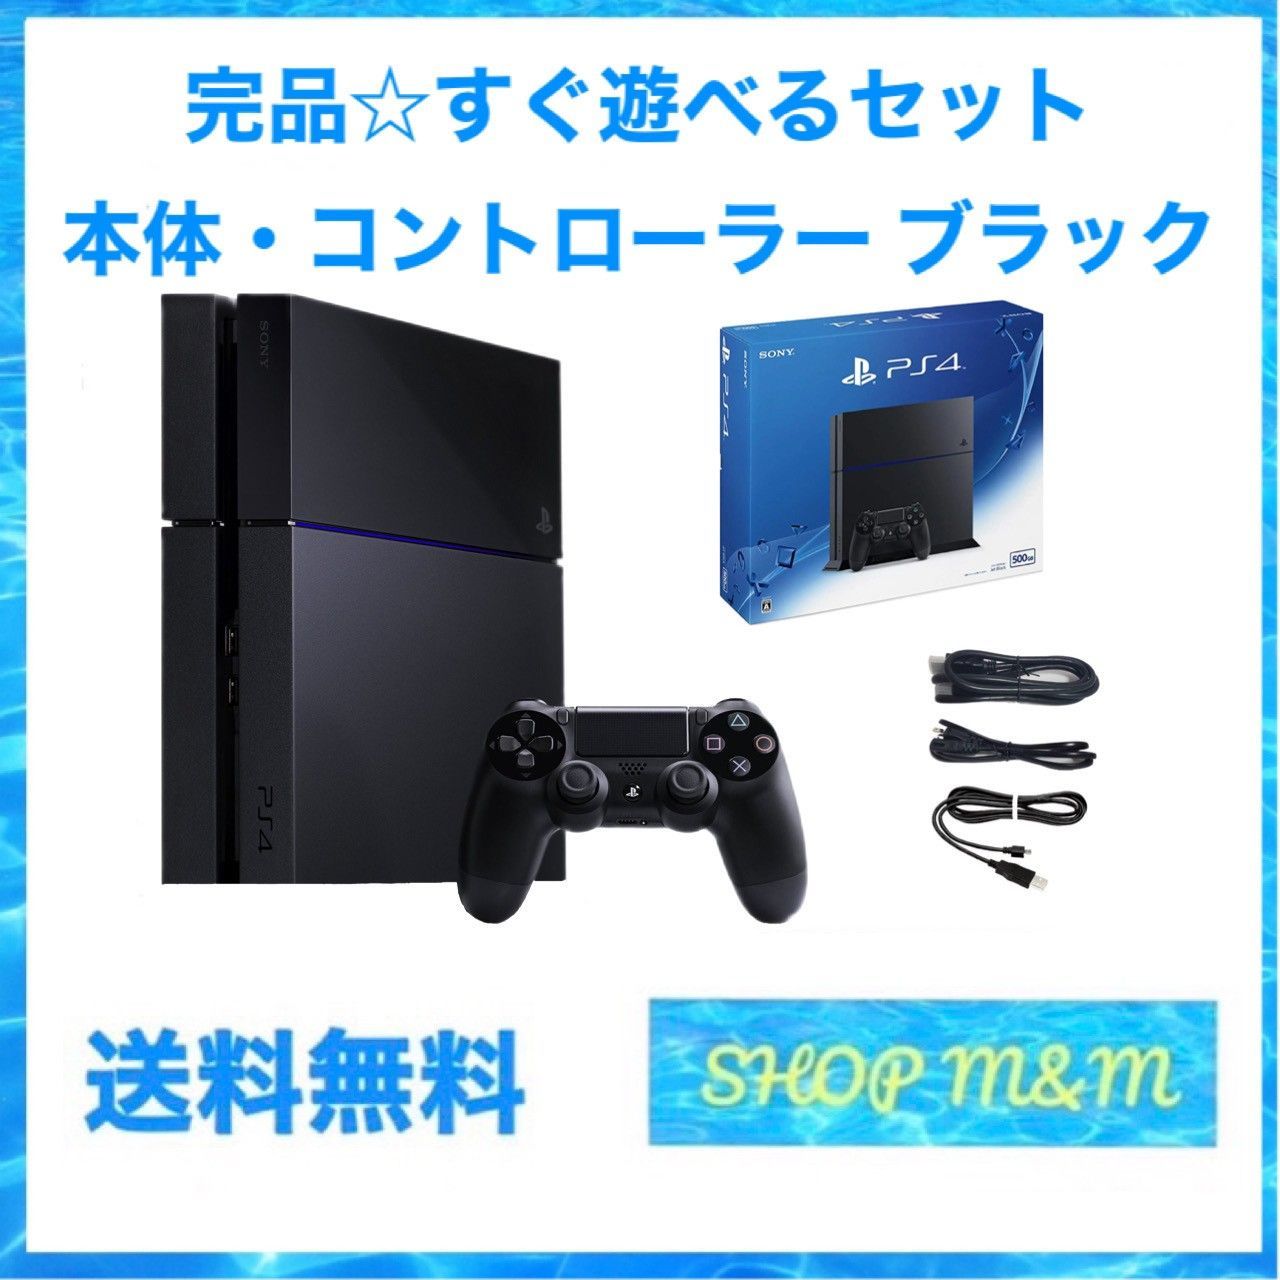 夏・お店屋さん 完全動作品 PlayStation4 本体 CUH-1200AB01 - 通販 